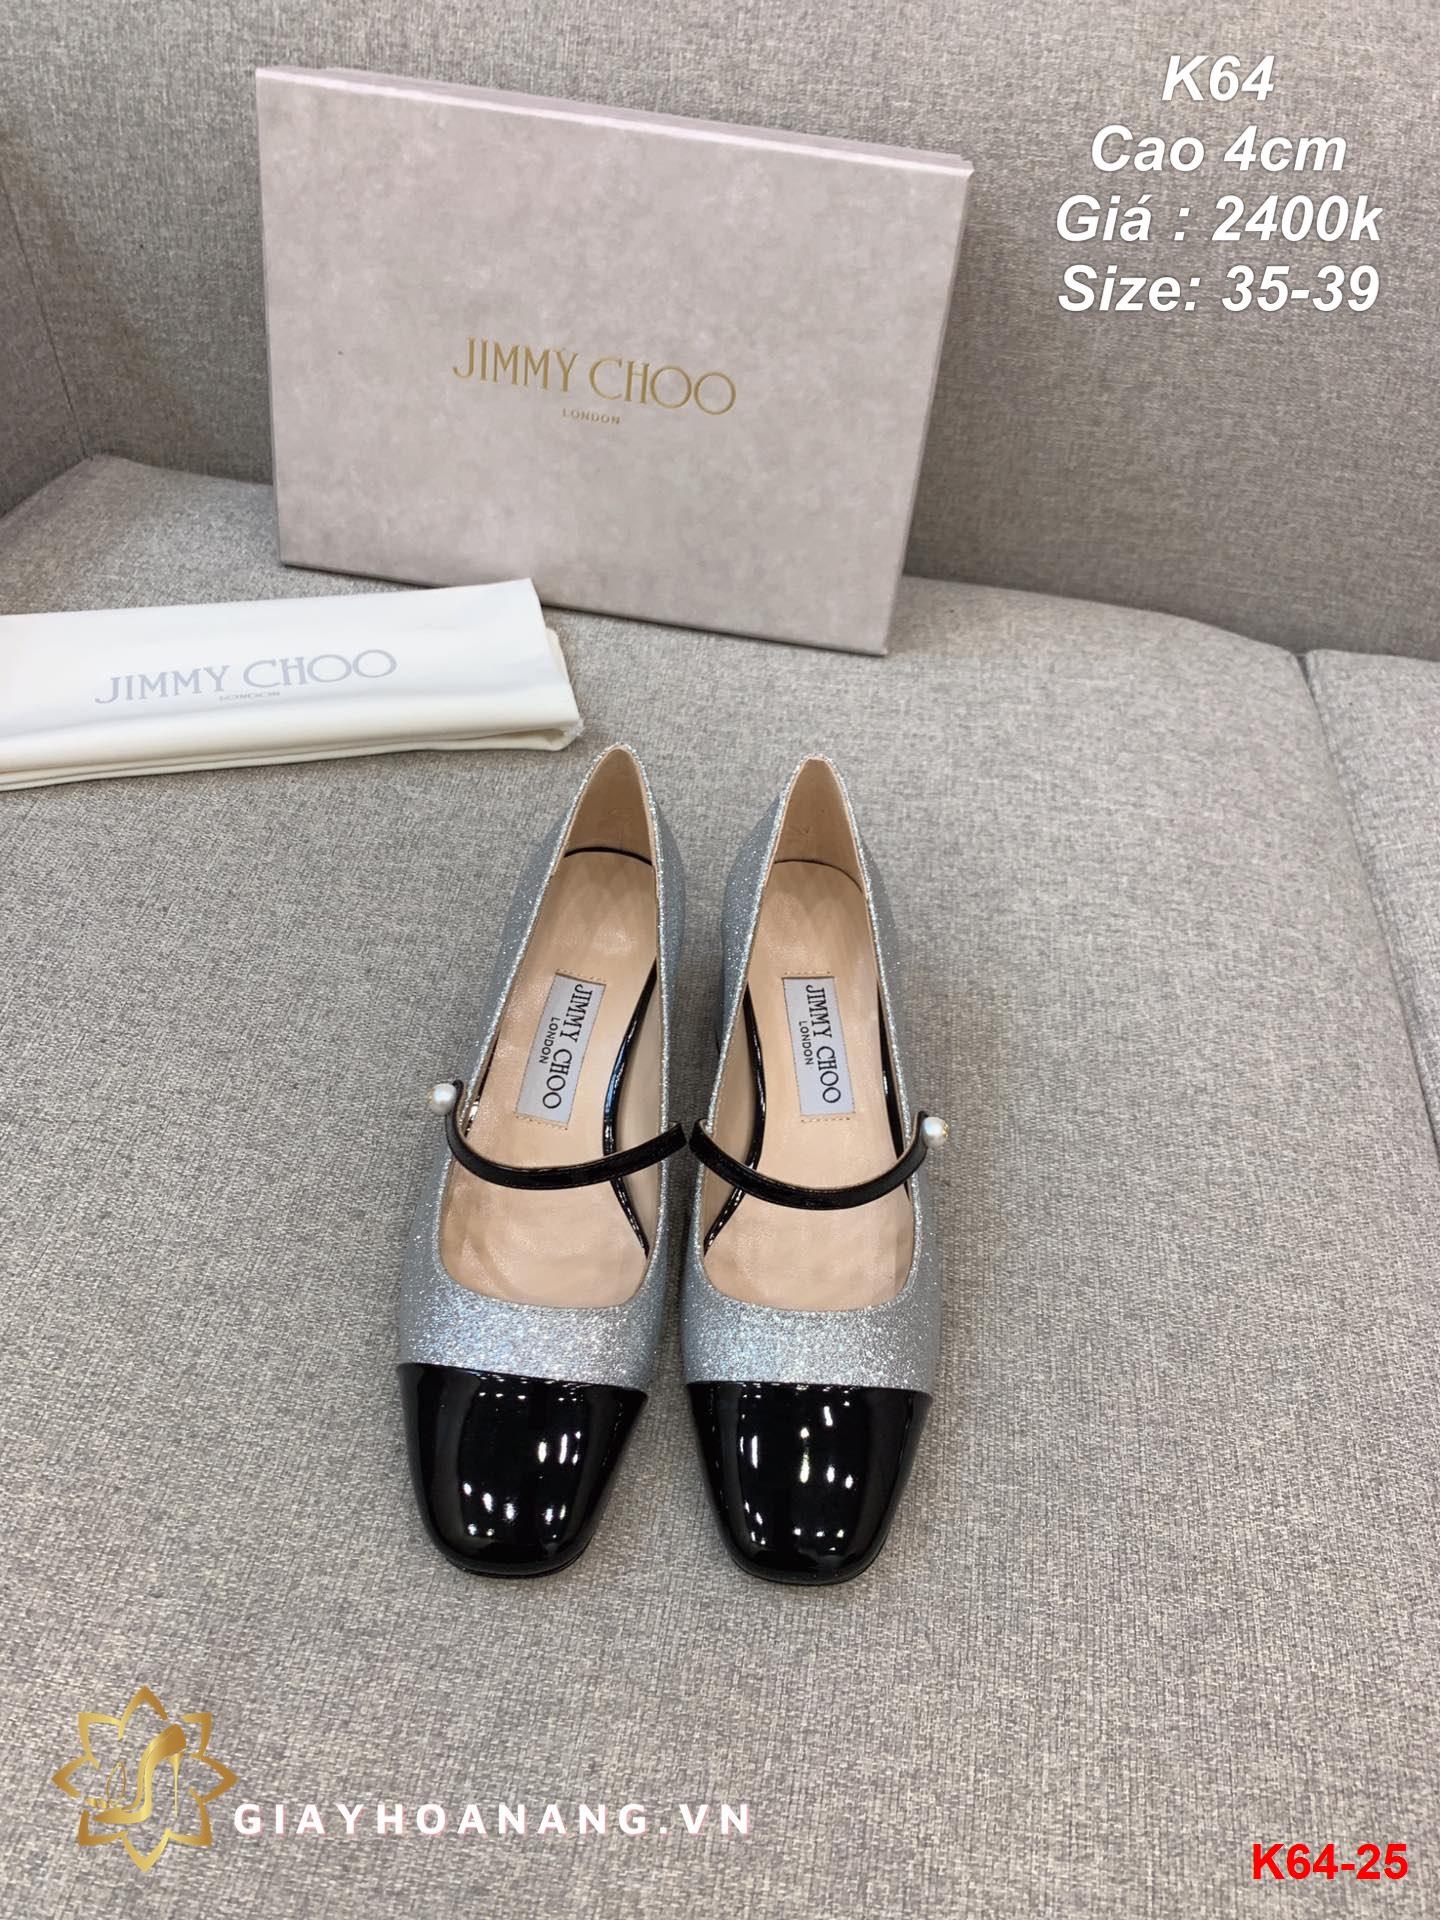 K64-25 Jimy Choo giày cao 4cm siêu cấp